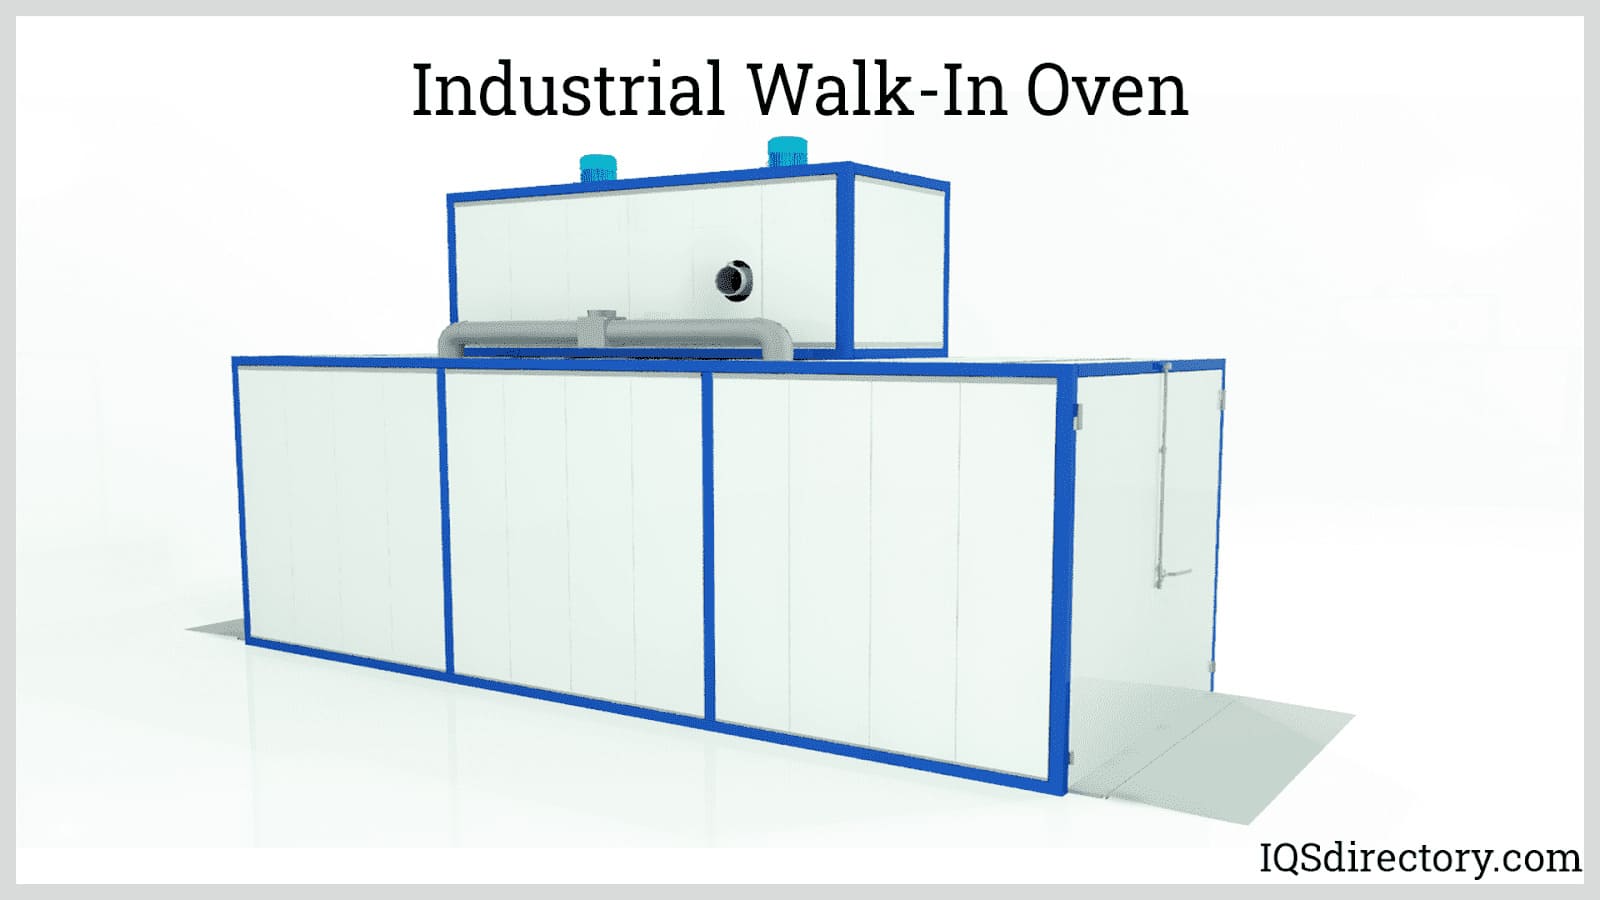 https://www.iqsdirectory.com/articles/industrial-oven/industrial-walk-in-oven.jpg